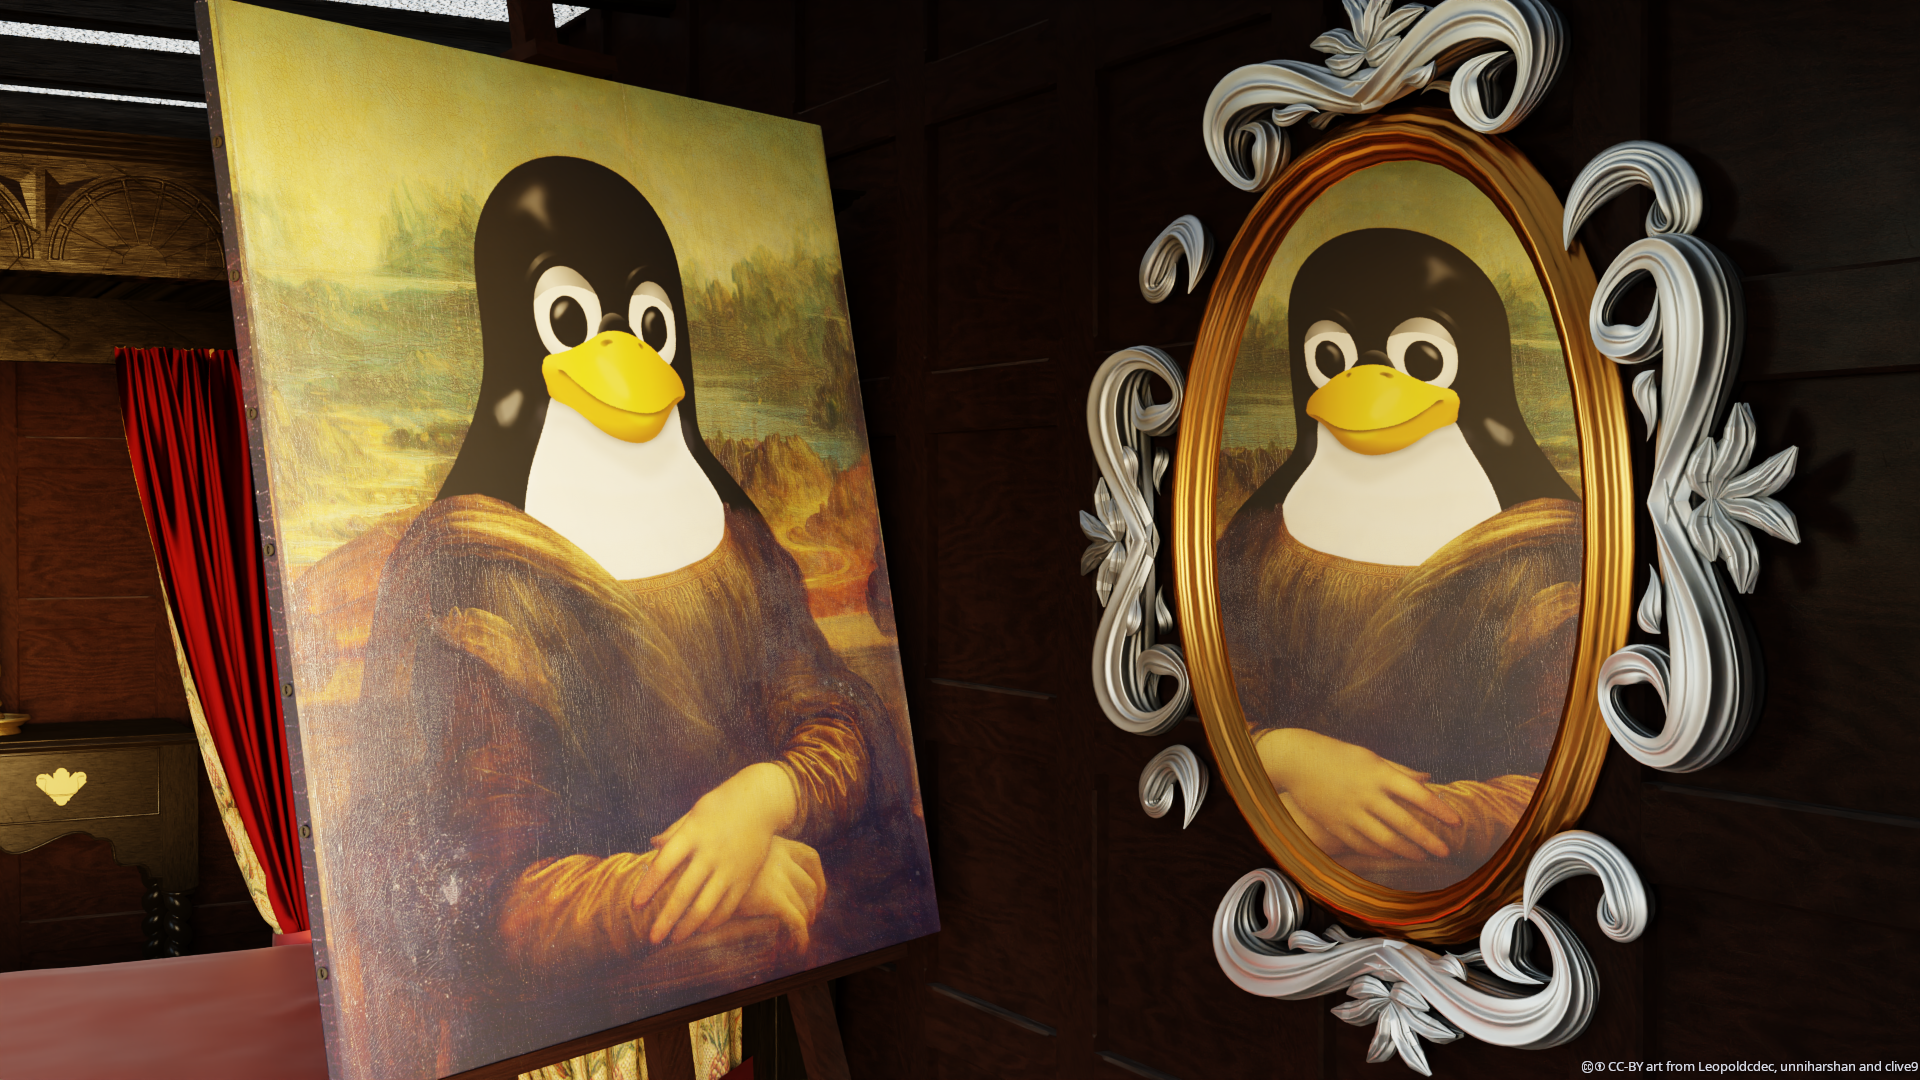 Ein Mona Lisa Gemälde mit dem Tux Pinguin als Gesicht betrachtet sich im Spiegel